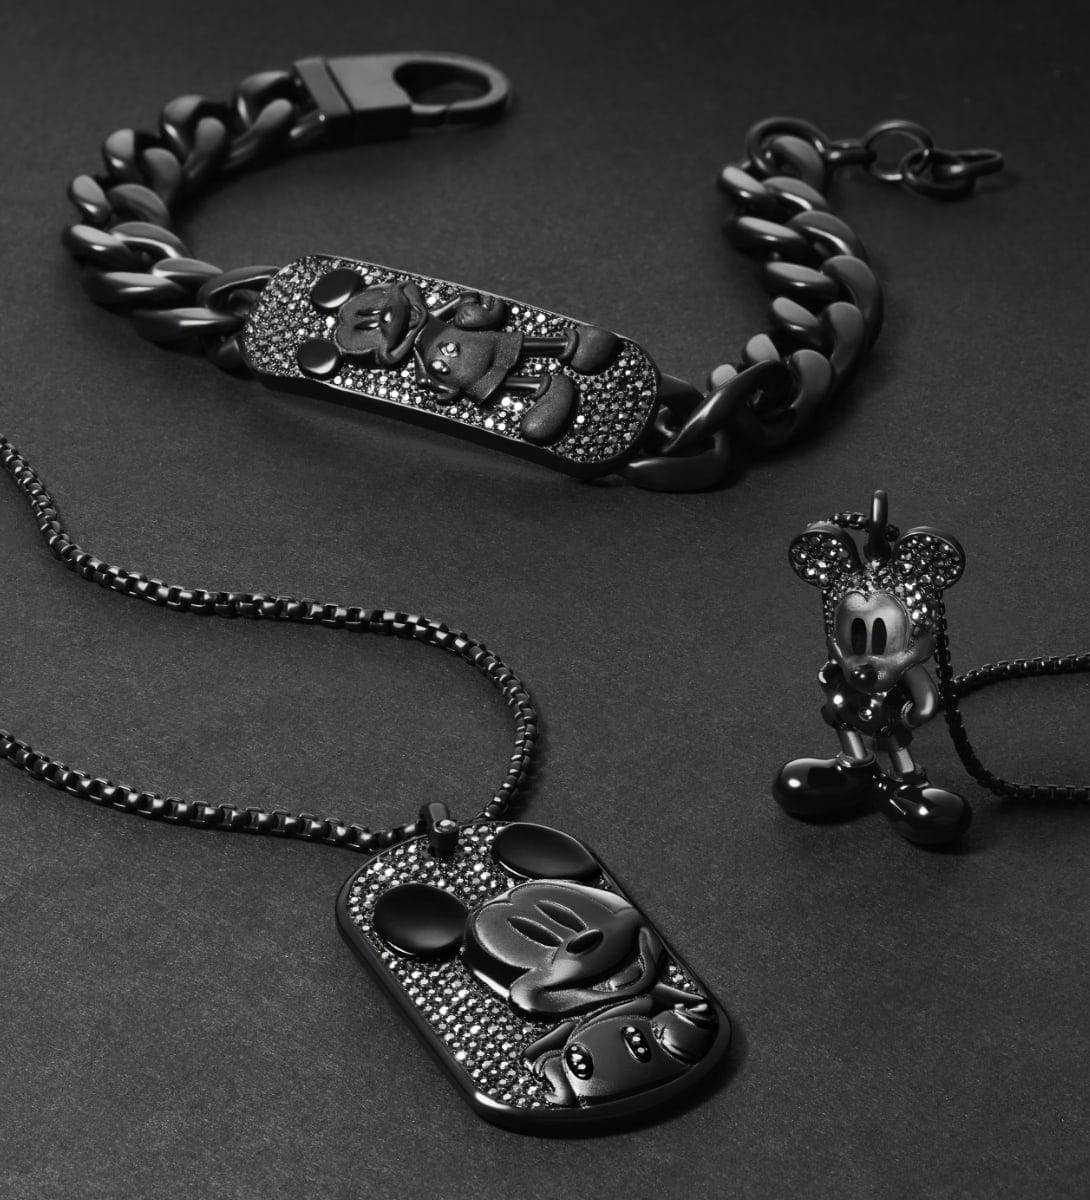 Drei komplett schwarze Micky Maus Schmuckstücke mit Hämatit-Glassteinen. Ein Armband mit Plakette, eine Halskette mit Dog Tag und eine Halskette mit Figurenanhänger sind kunstvoll vor einem schwarzen Hintergrund angeordnet.